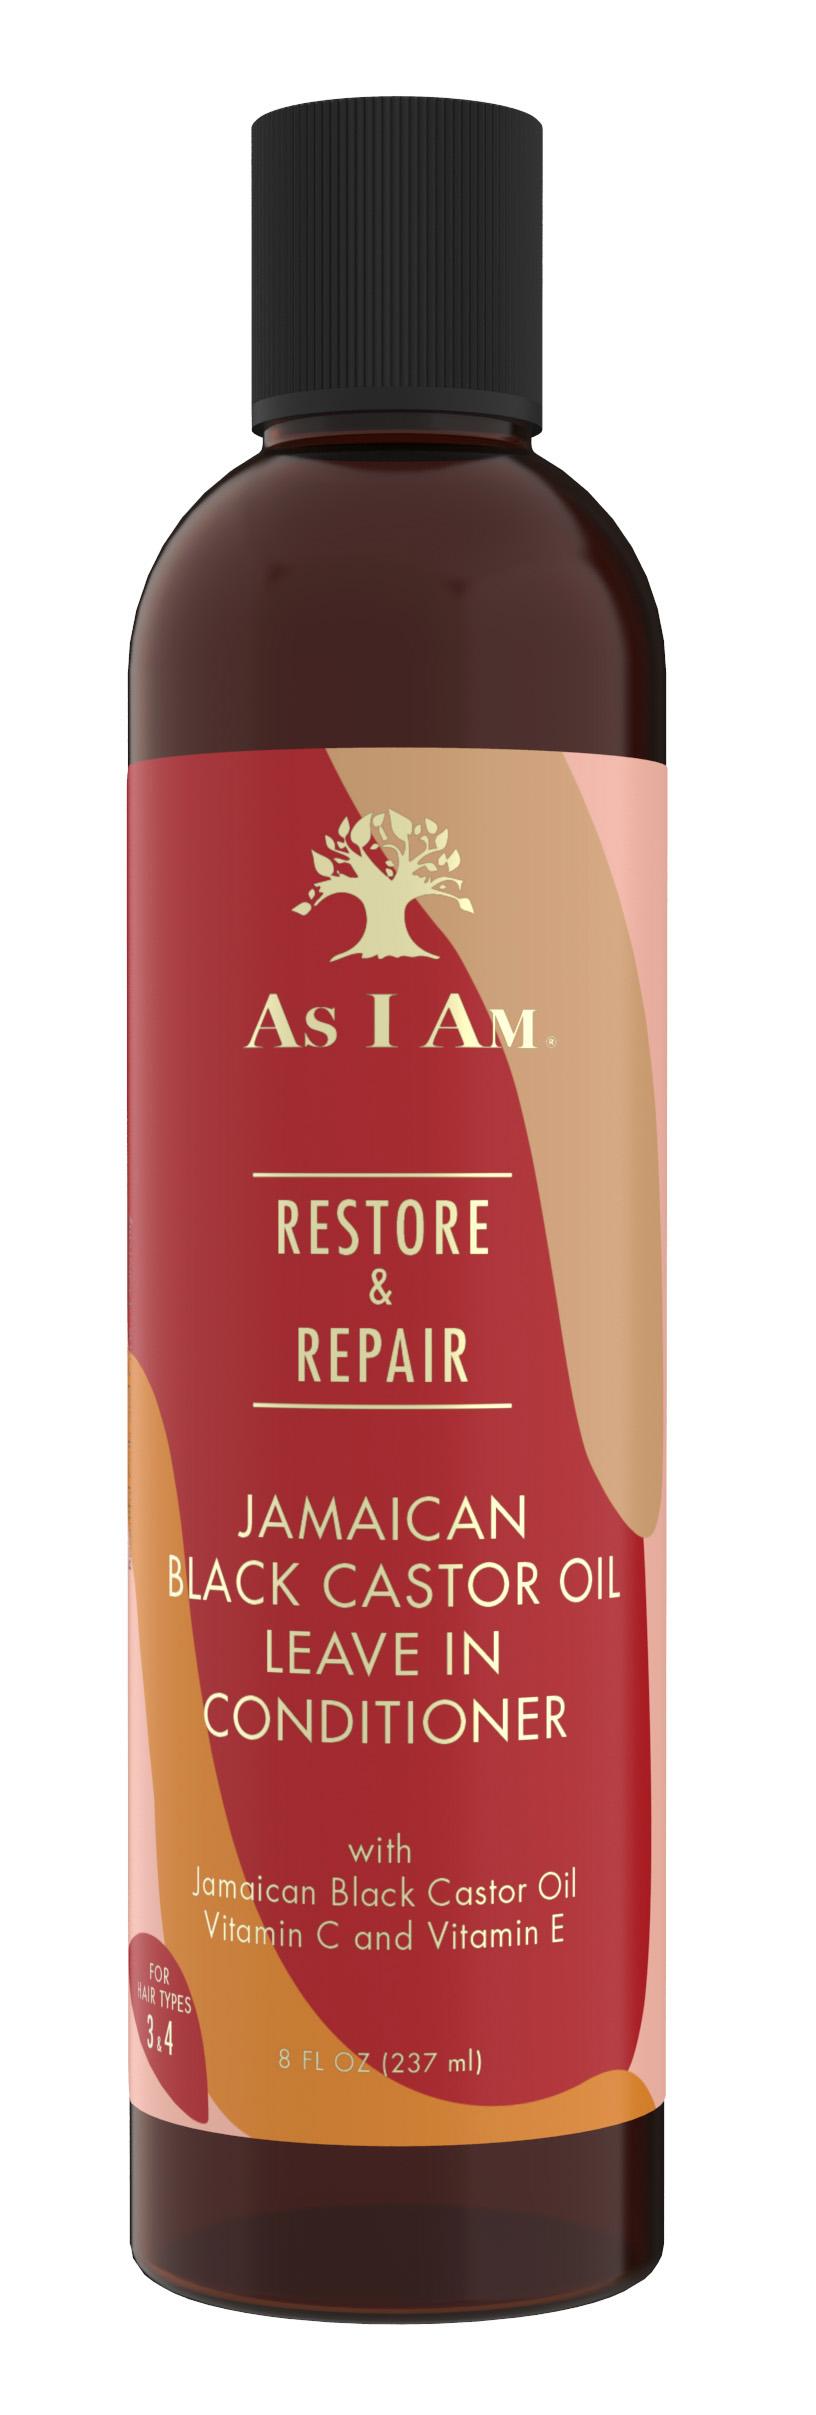 As I Am Restore & Repair Jamaican Black Castor Oil Leave-In Conditioner, 8oz